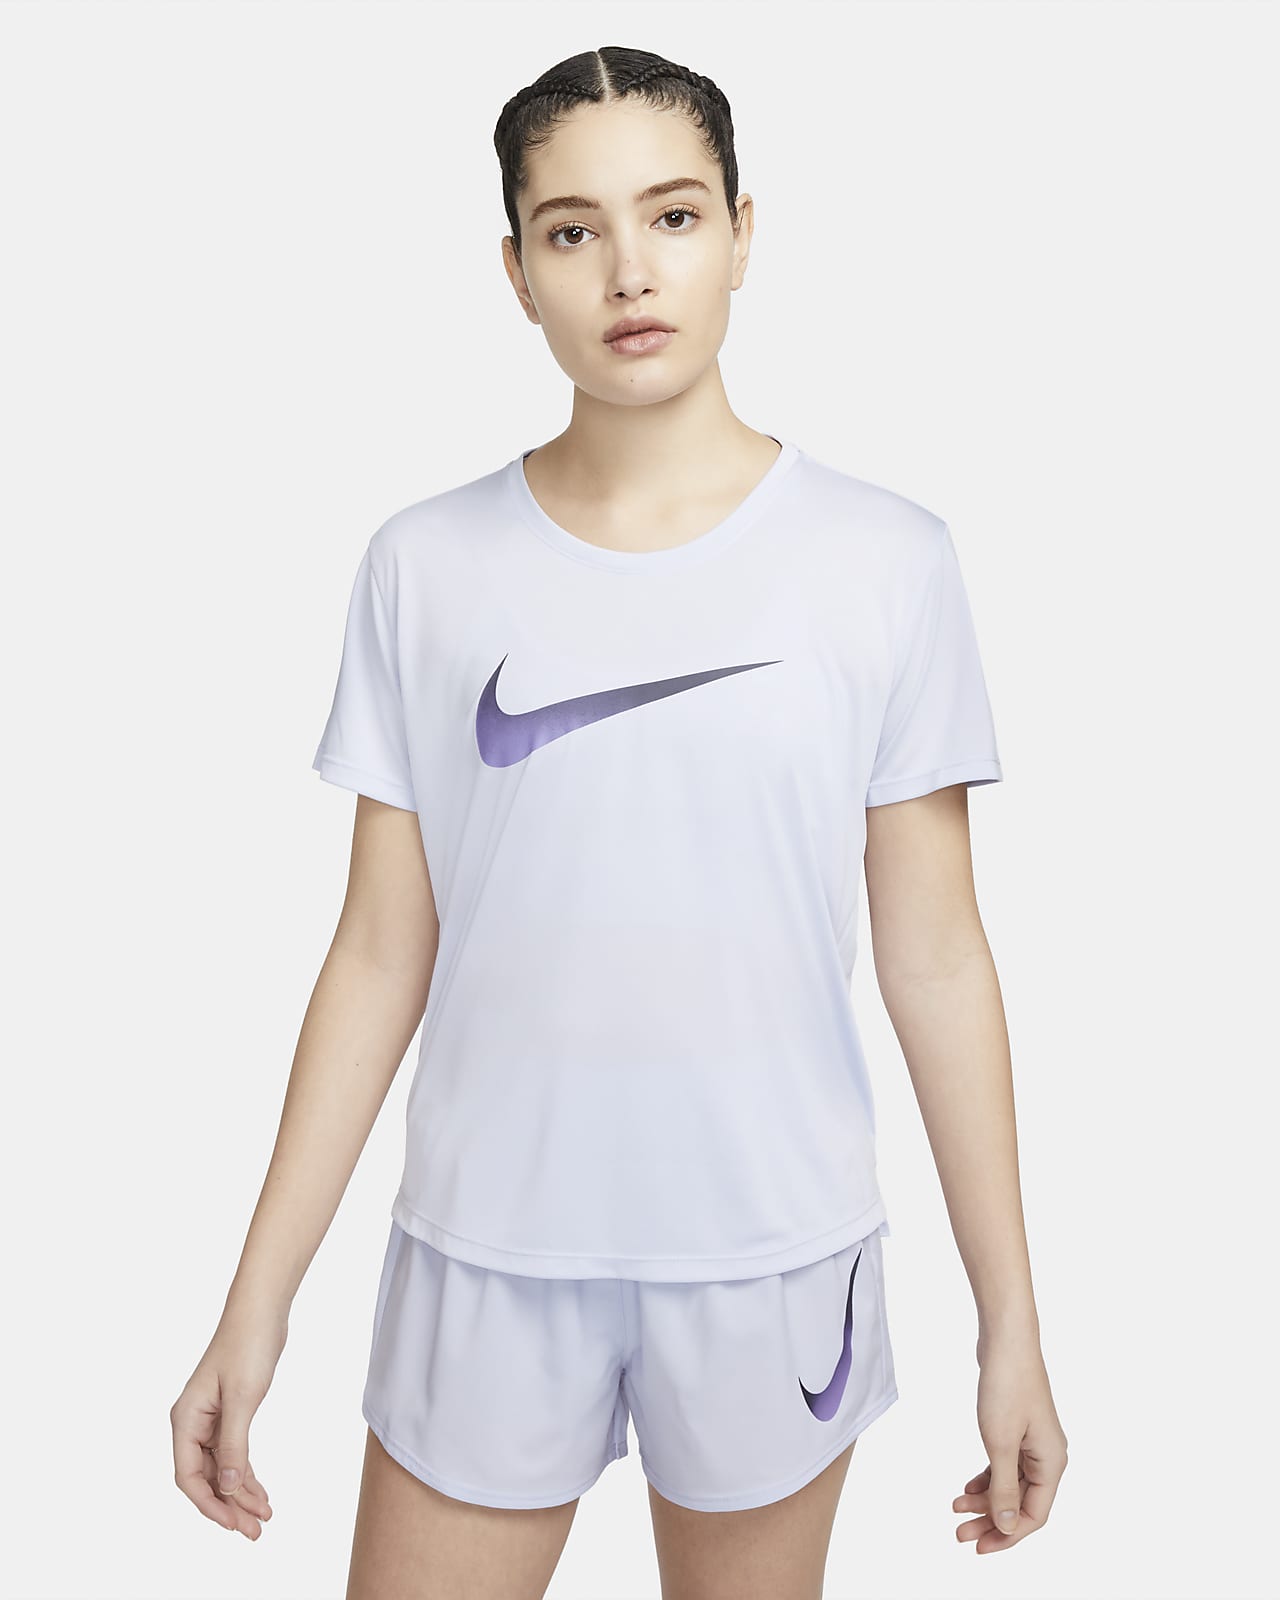 Nike Dri-FIT One rövid ujjú női futófelső